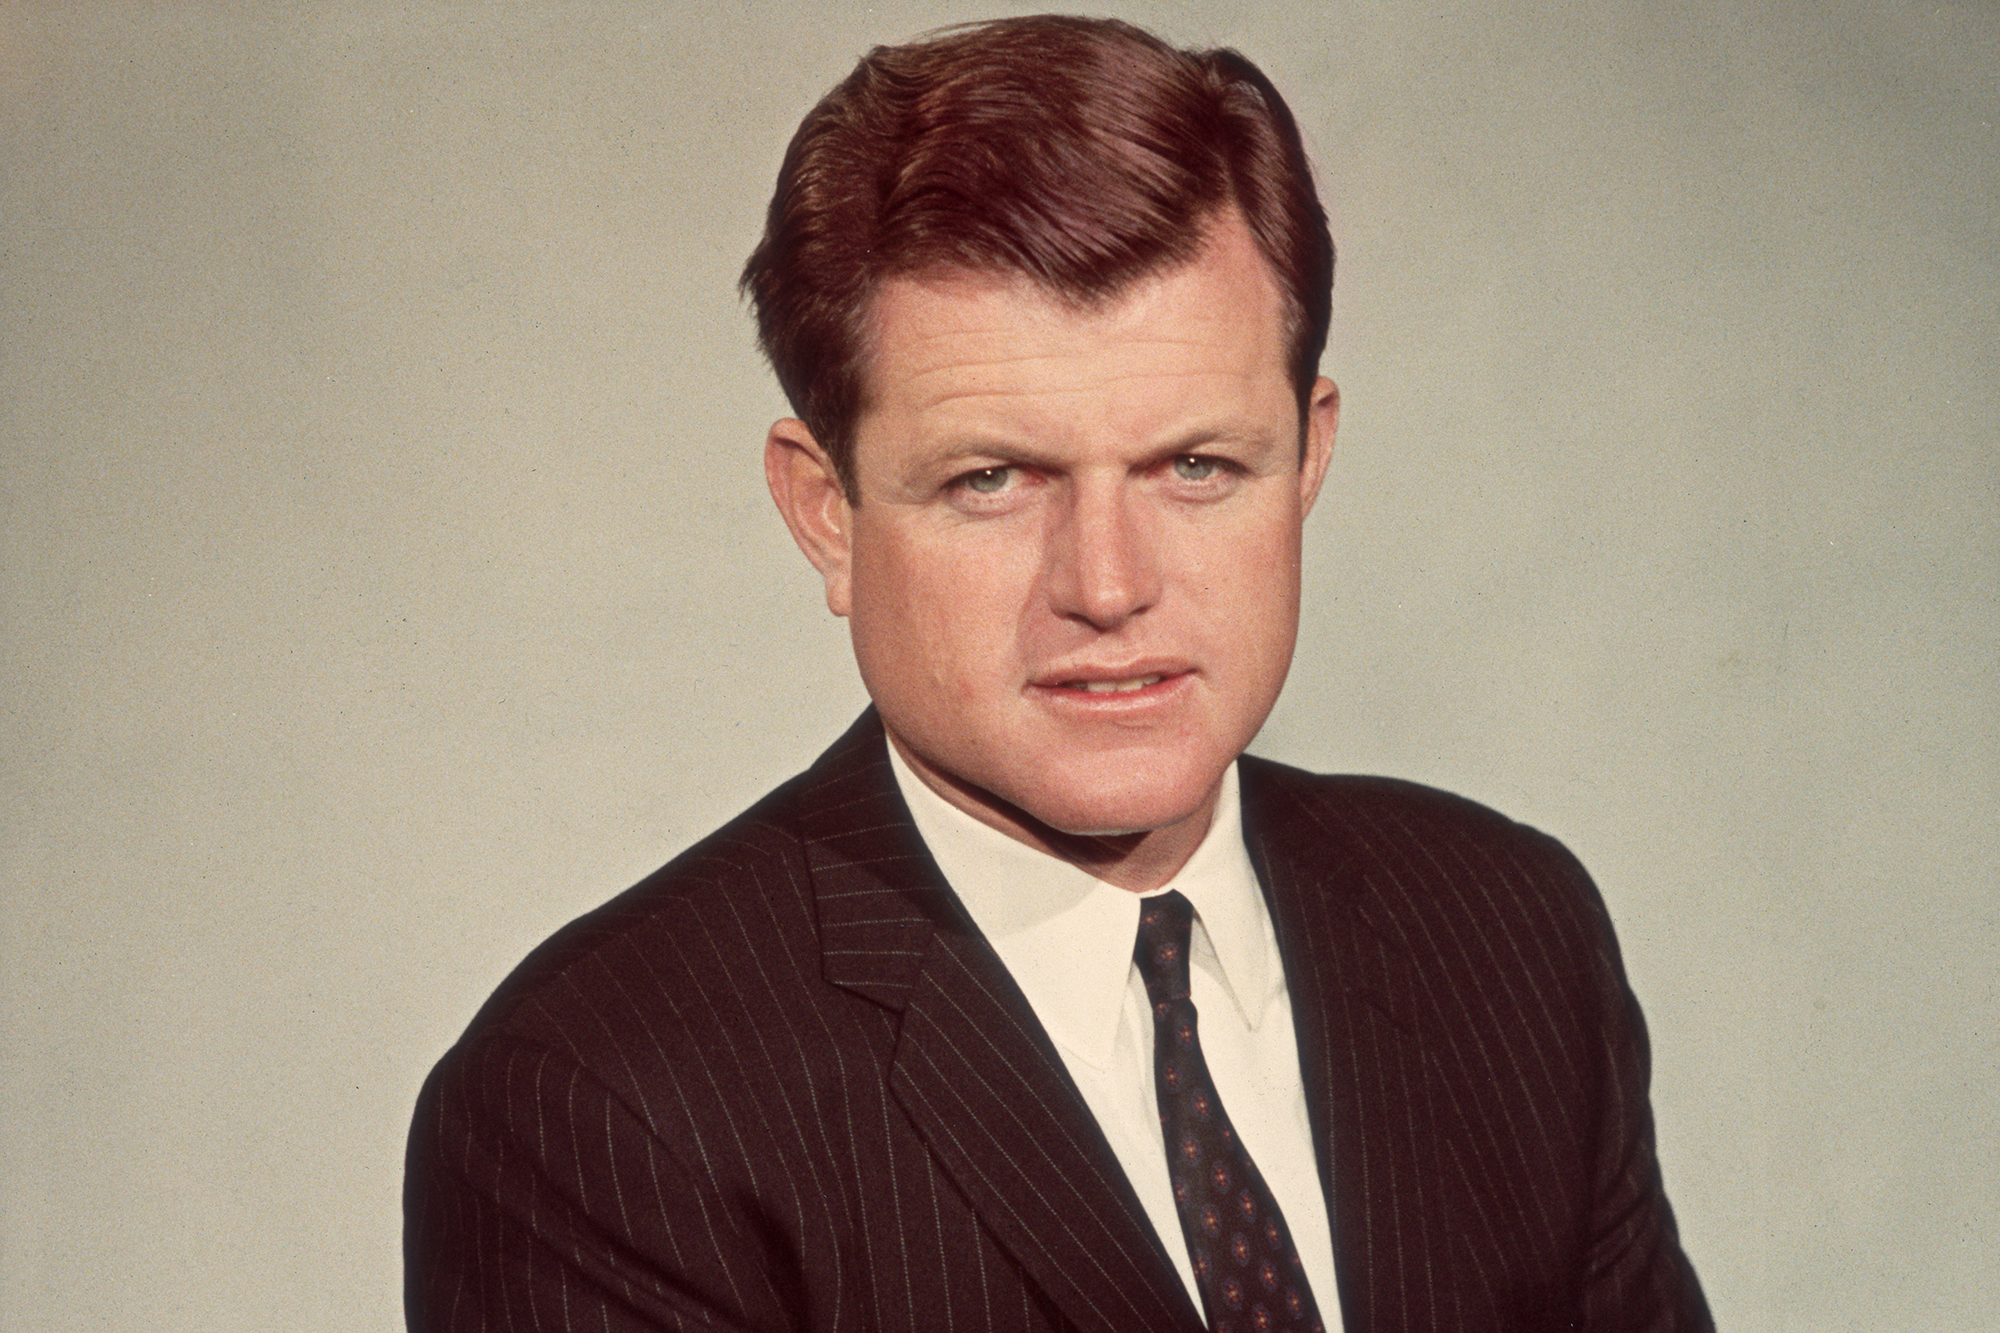 Lời nguyền của dòng họ Kennedy: Ám ảnh bi kịch đeo bám suốt 7 thập kỷ - Ảnh 9.